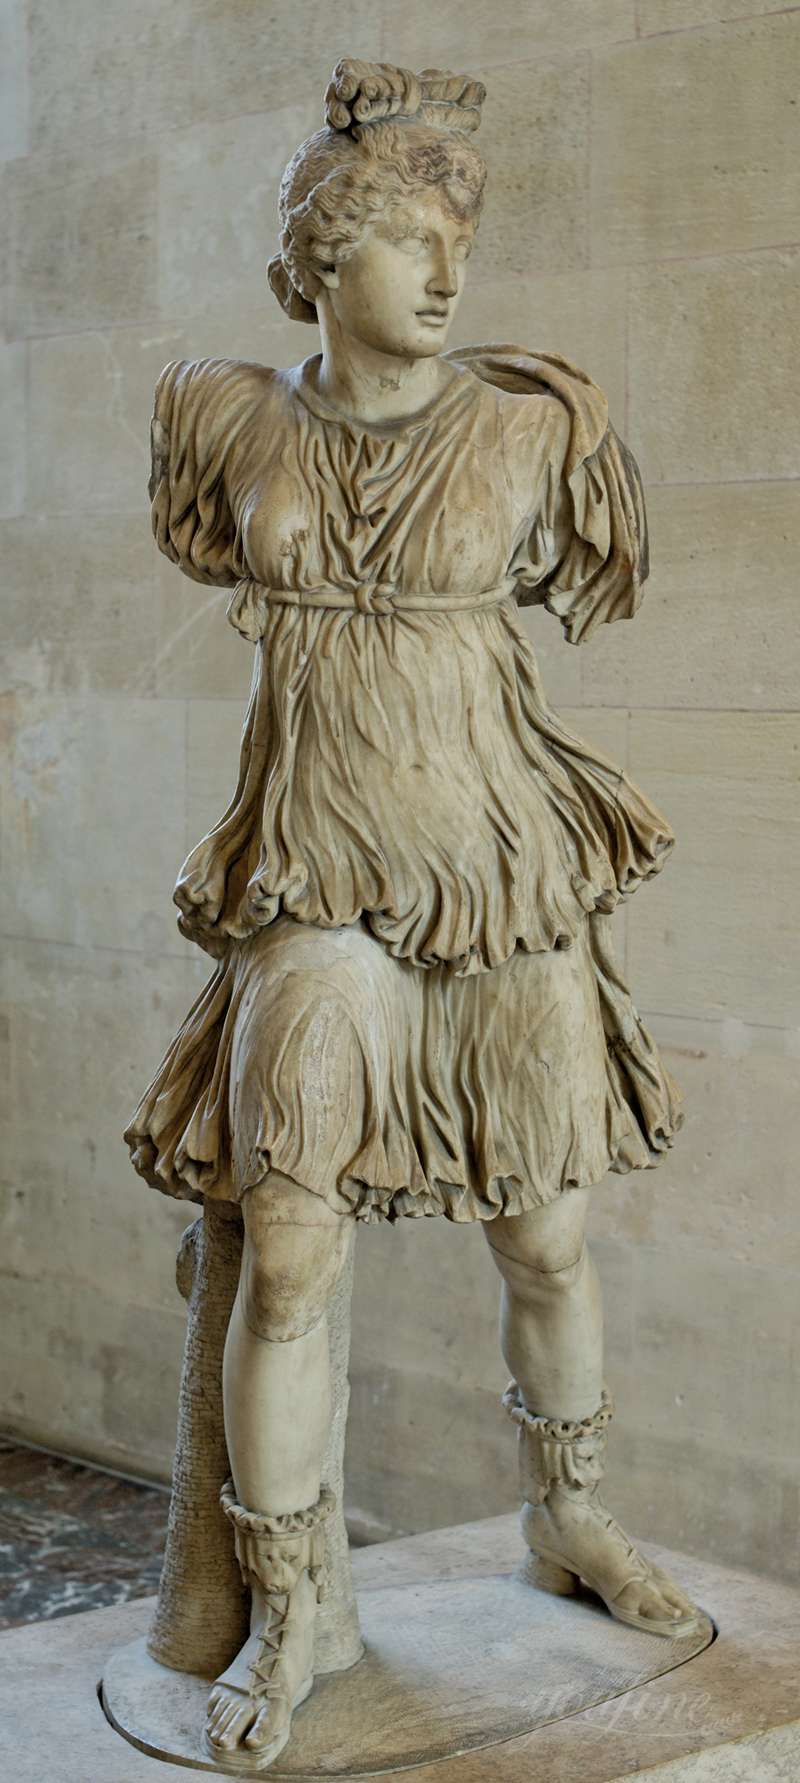 9. The Artemis of the Rospigliosi (2)